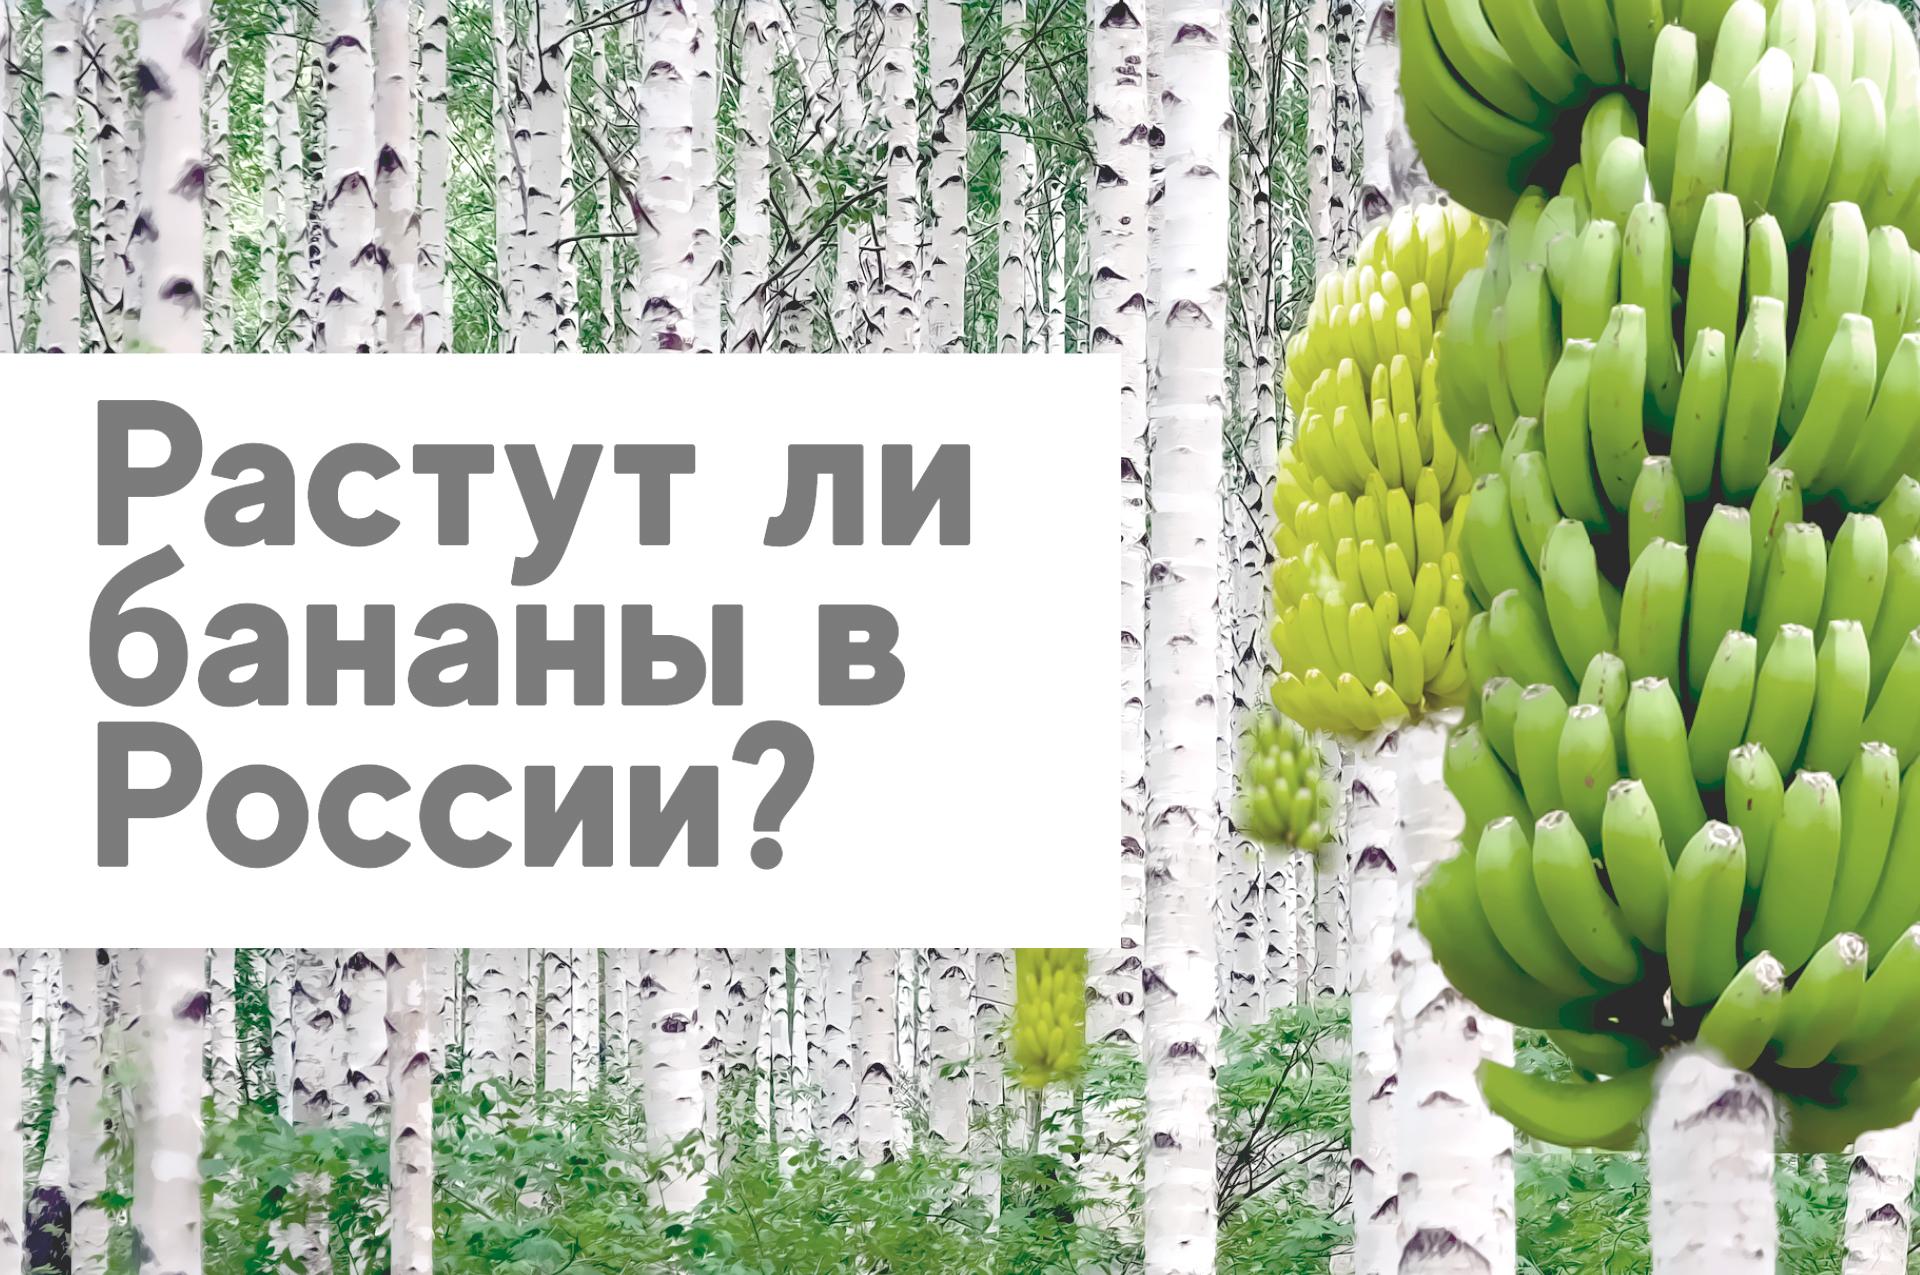 Растут ли бананы в России?